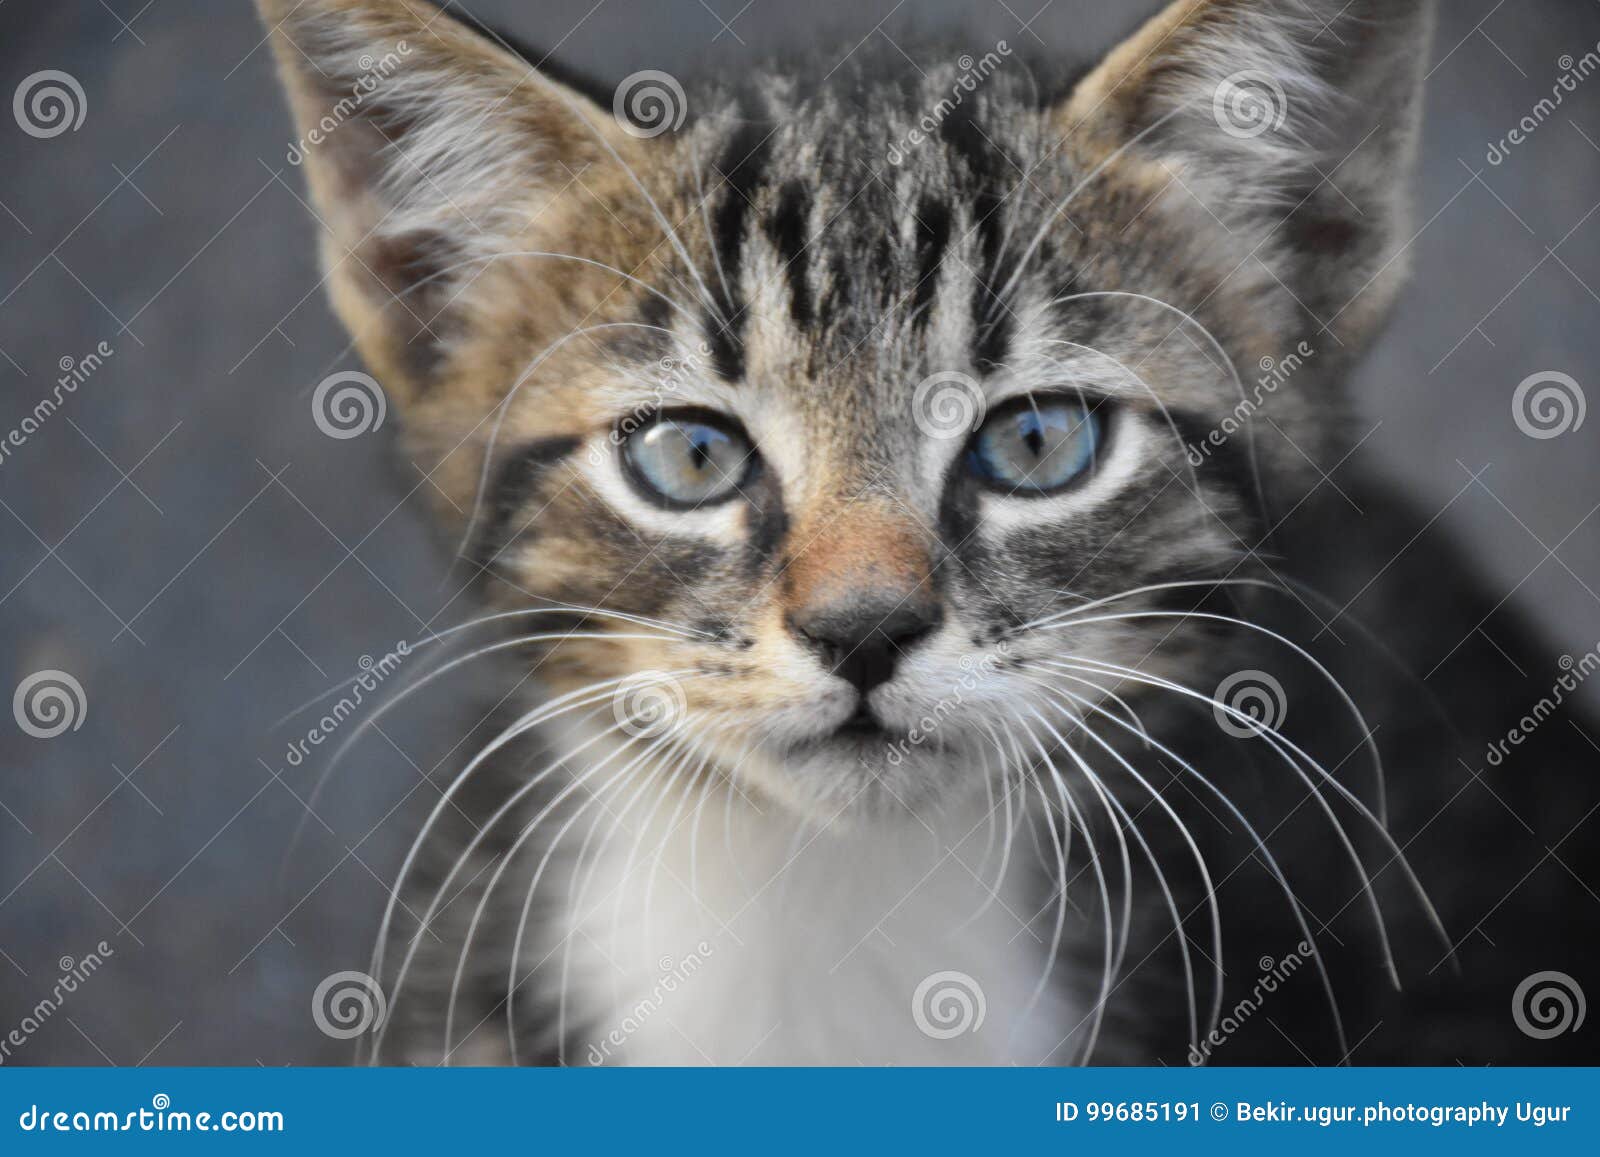 kittens cat